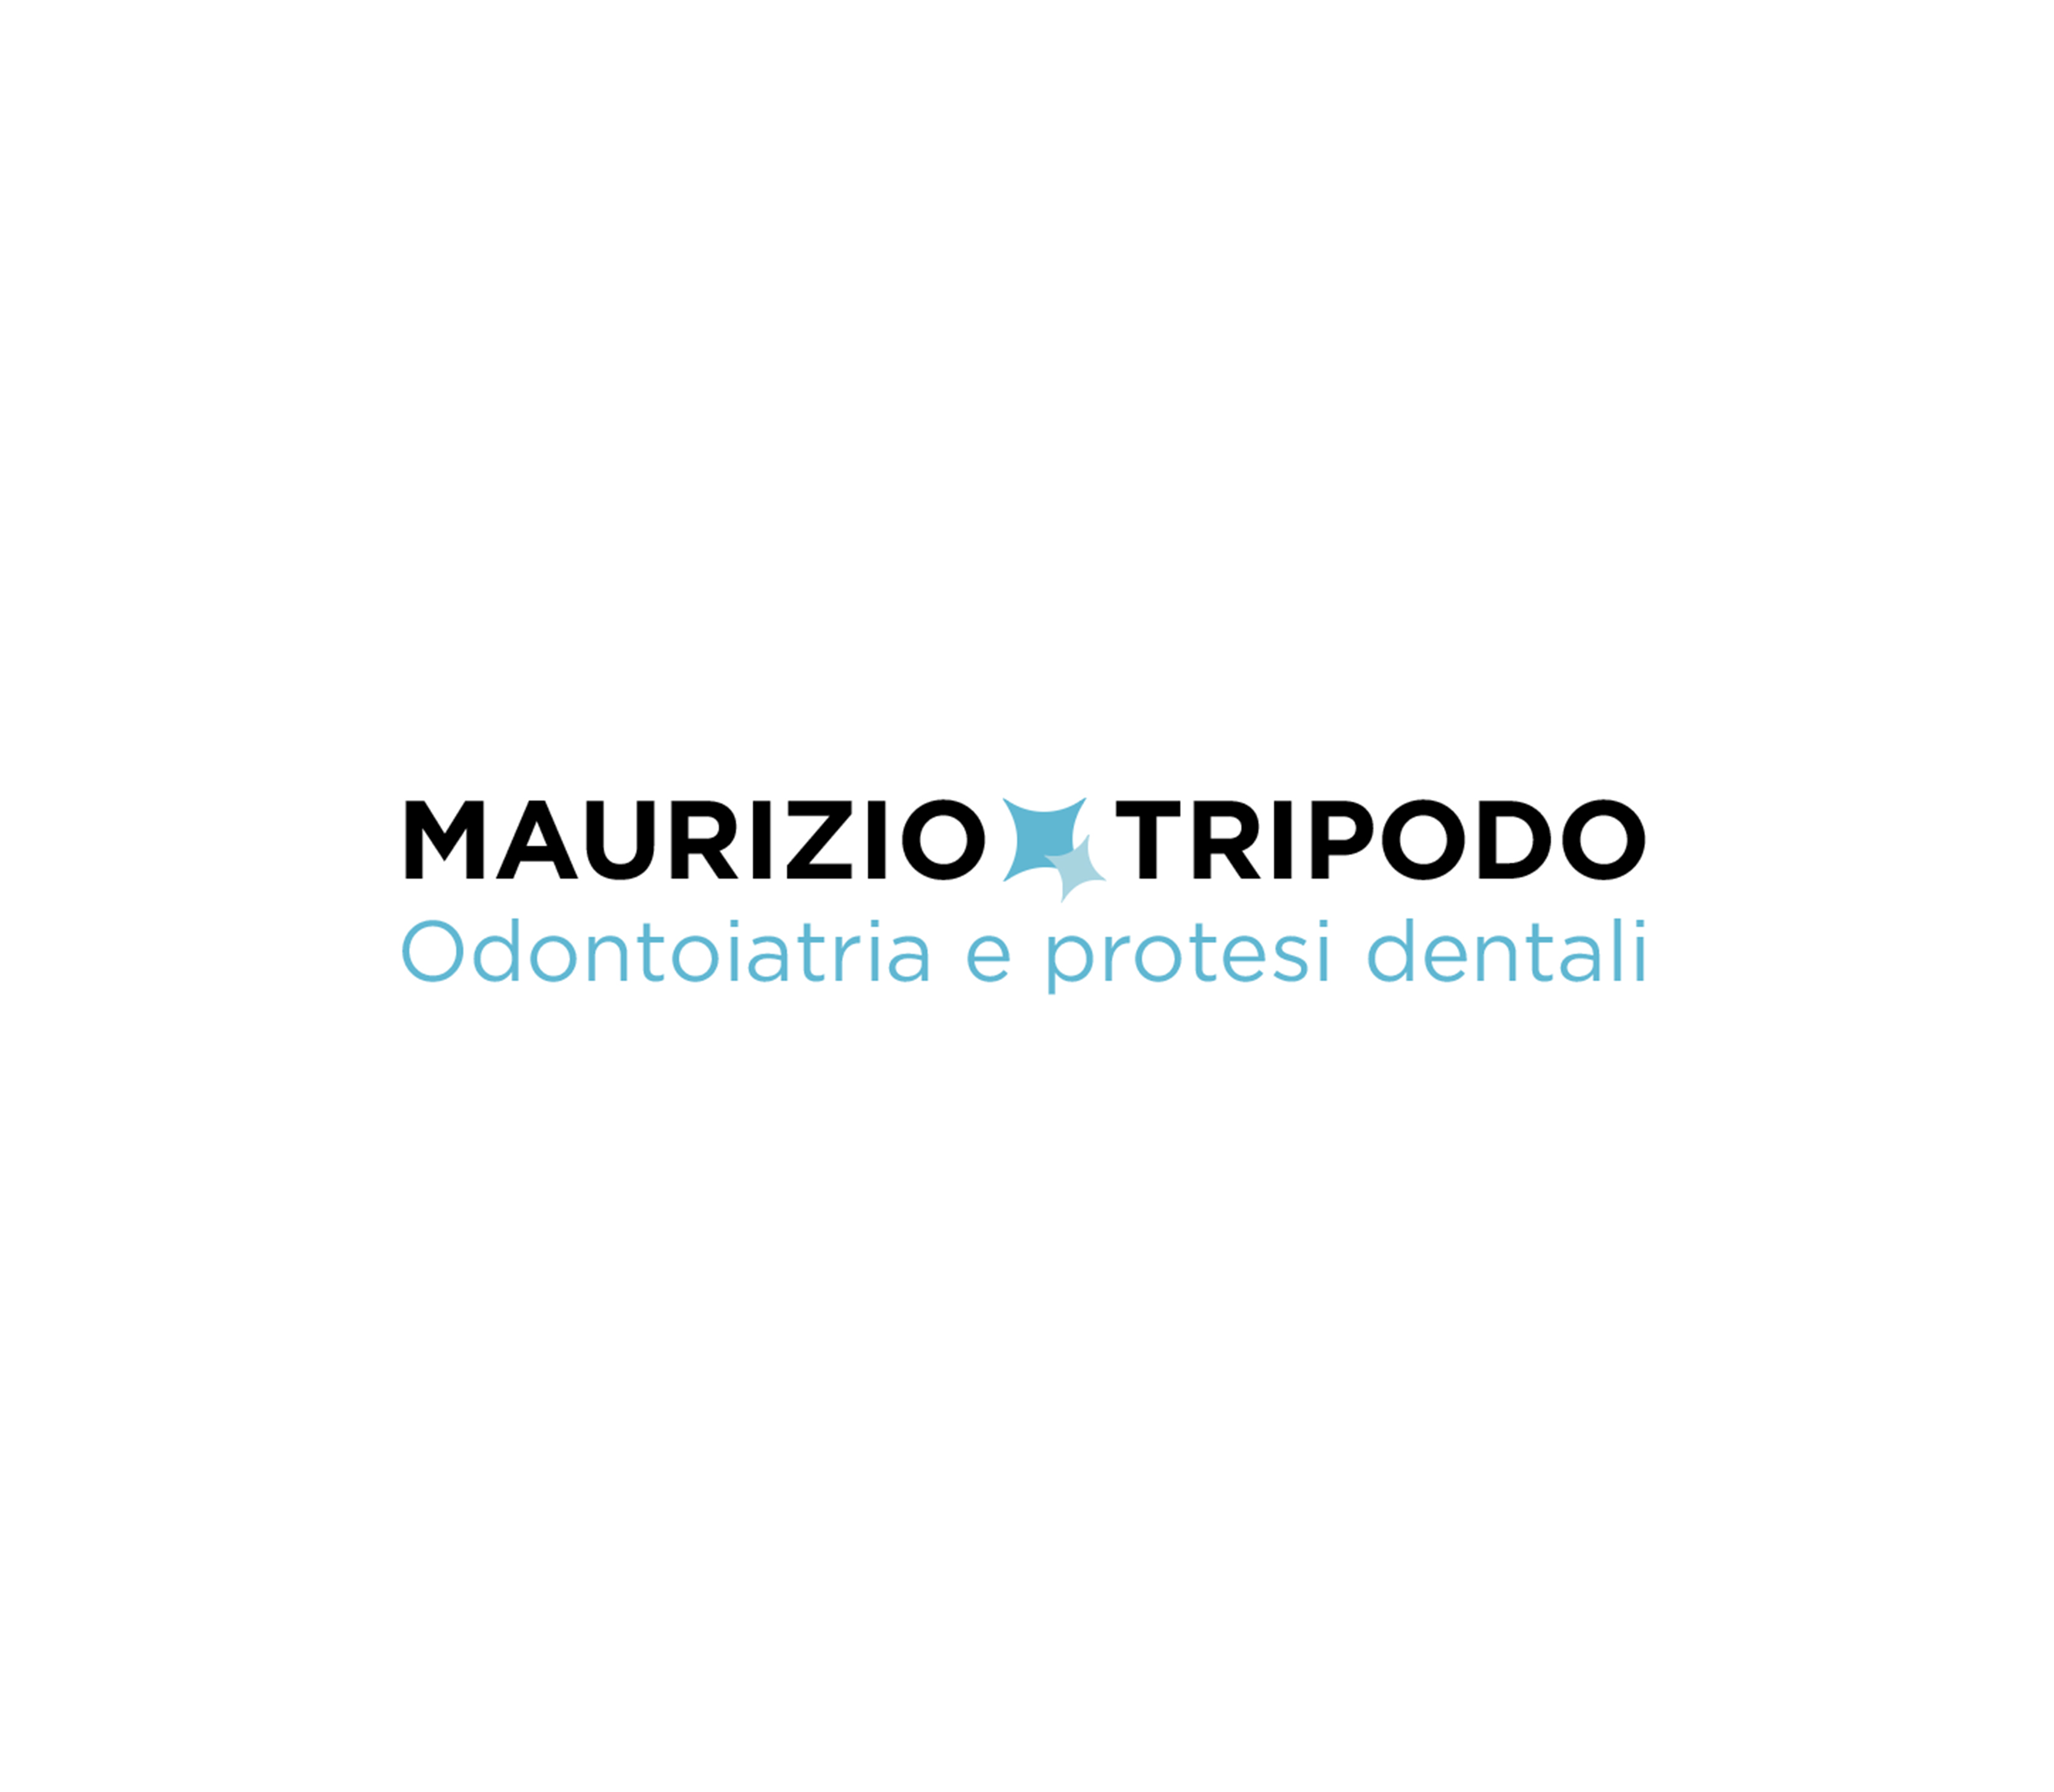 Maurizio Tripodo - Odontoiatra